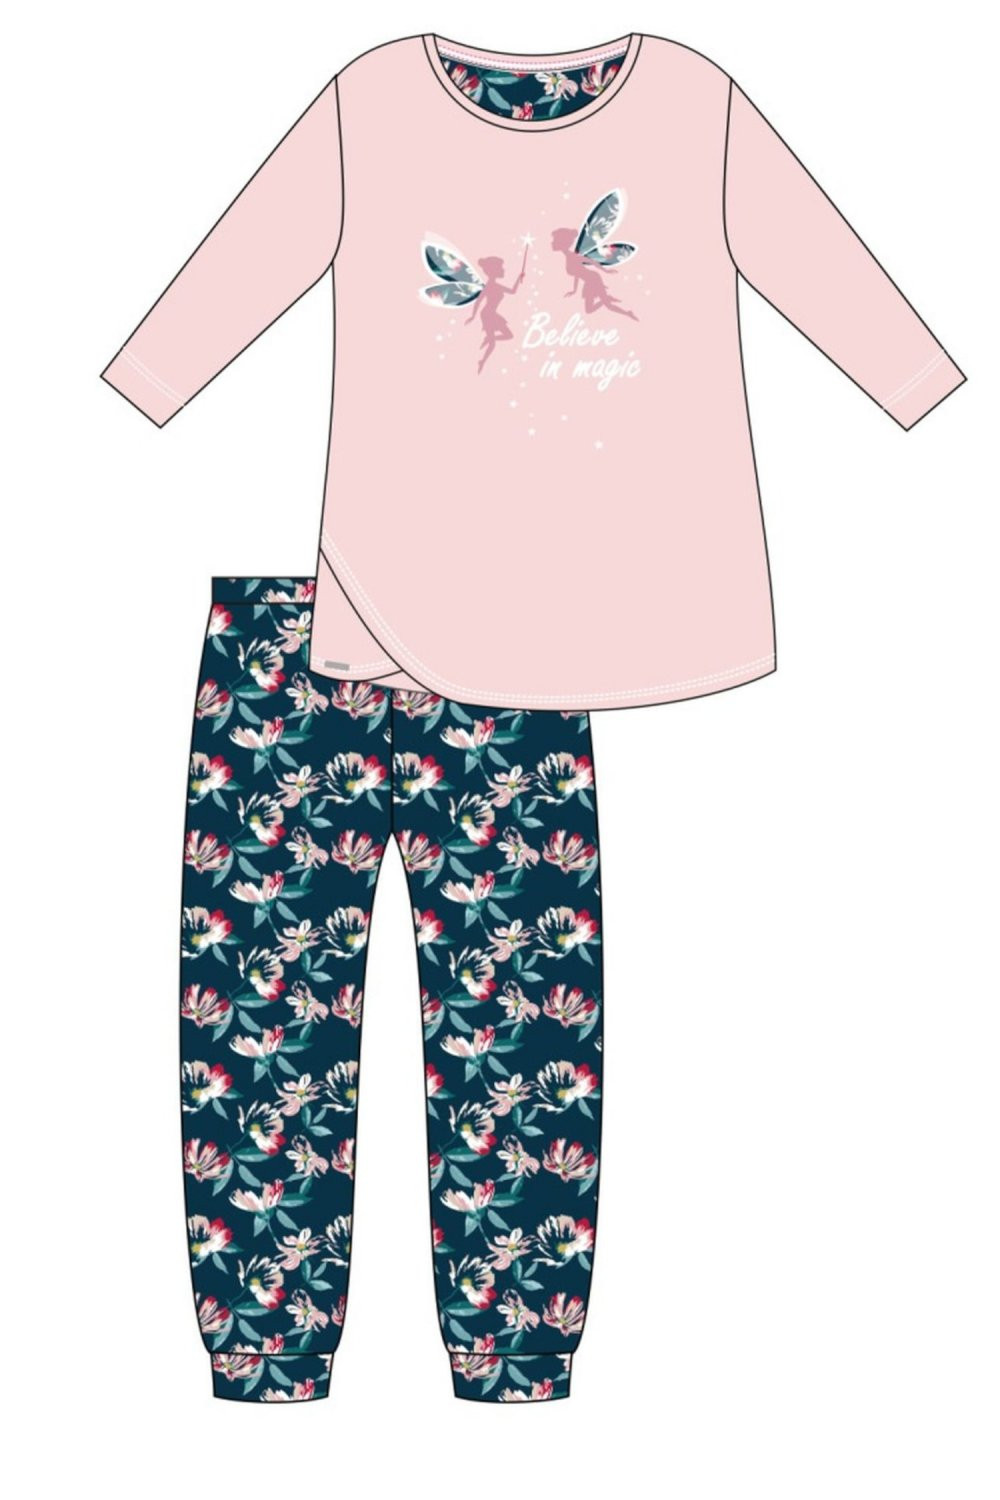 Dívčí pyžamo 964/158 Fairies - CORNETTE Růžová 134/140